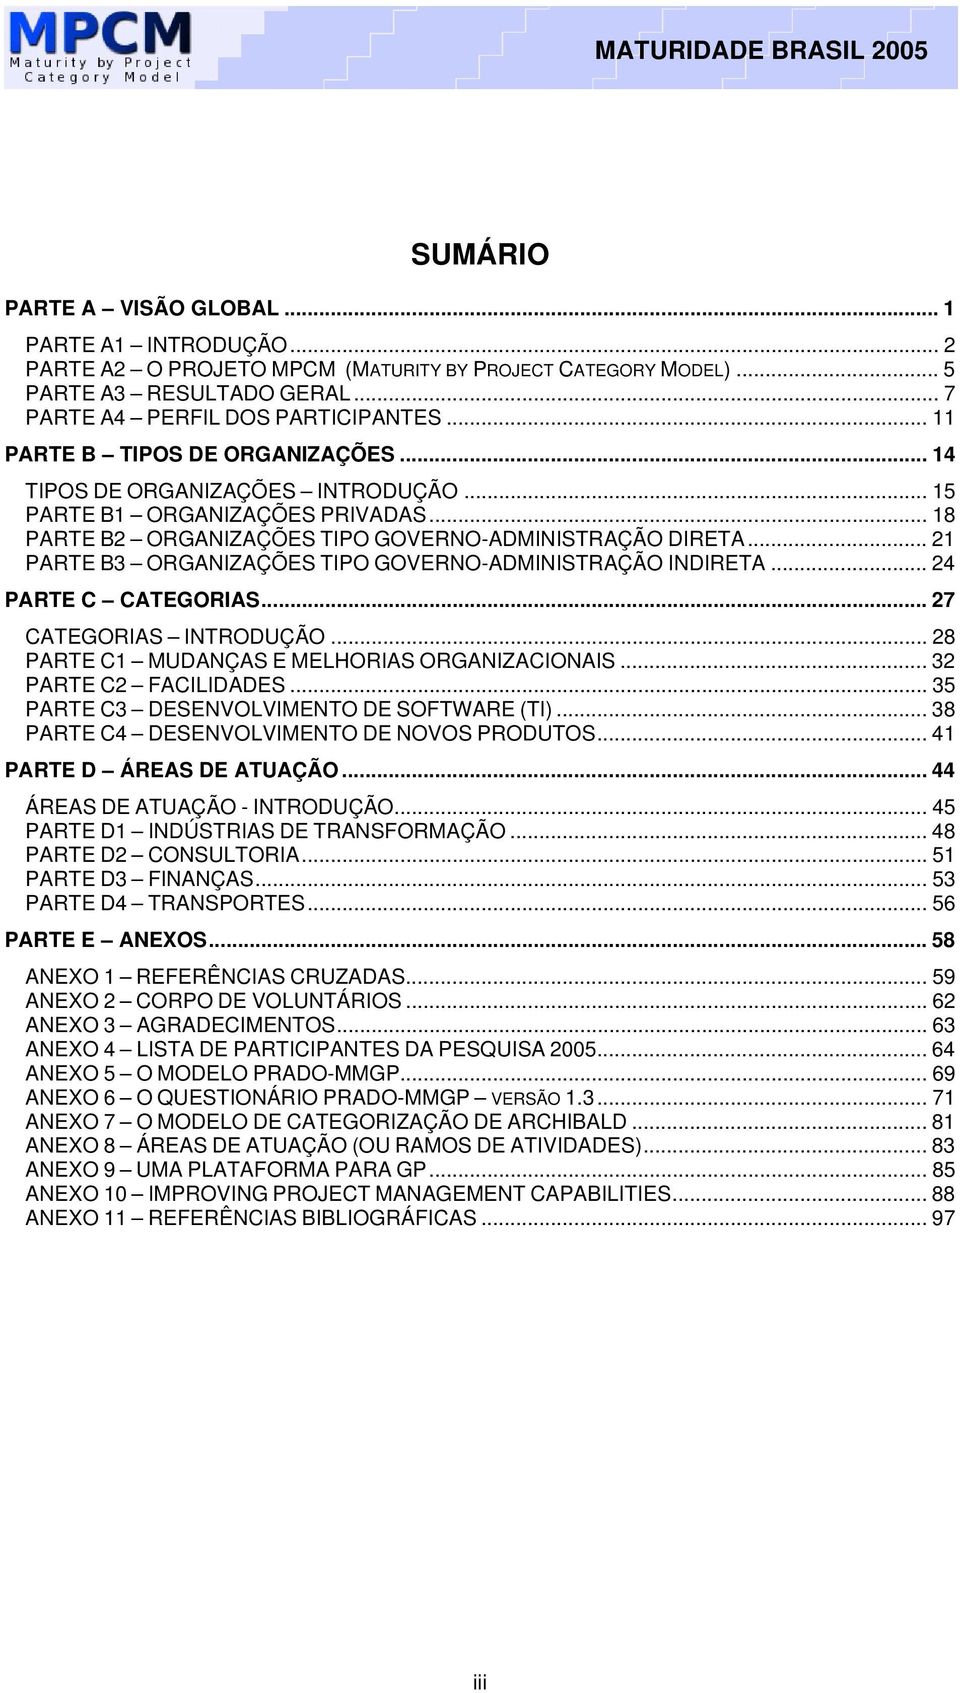 .. 21 PARTE B3 ORGANIZAÇÕES TIPO GOVERNO-ADMINISTRAÇÃO INDIRETA... 24 PARTE C CATEGORIAS... 27 CATEGORIAS INTRODUÇÃO... 28 PARTE C1 MUDANÇAS E MELHORIAS ORGANIZACIONAIS... 32 PARTE C2 FACILIDADES.